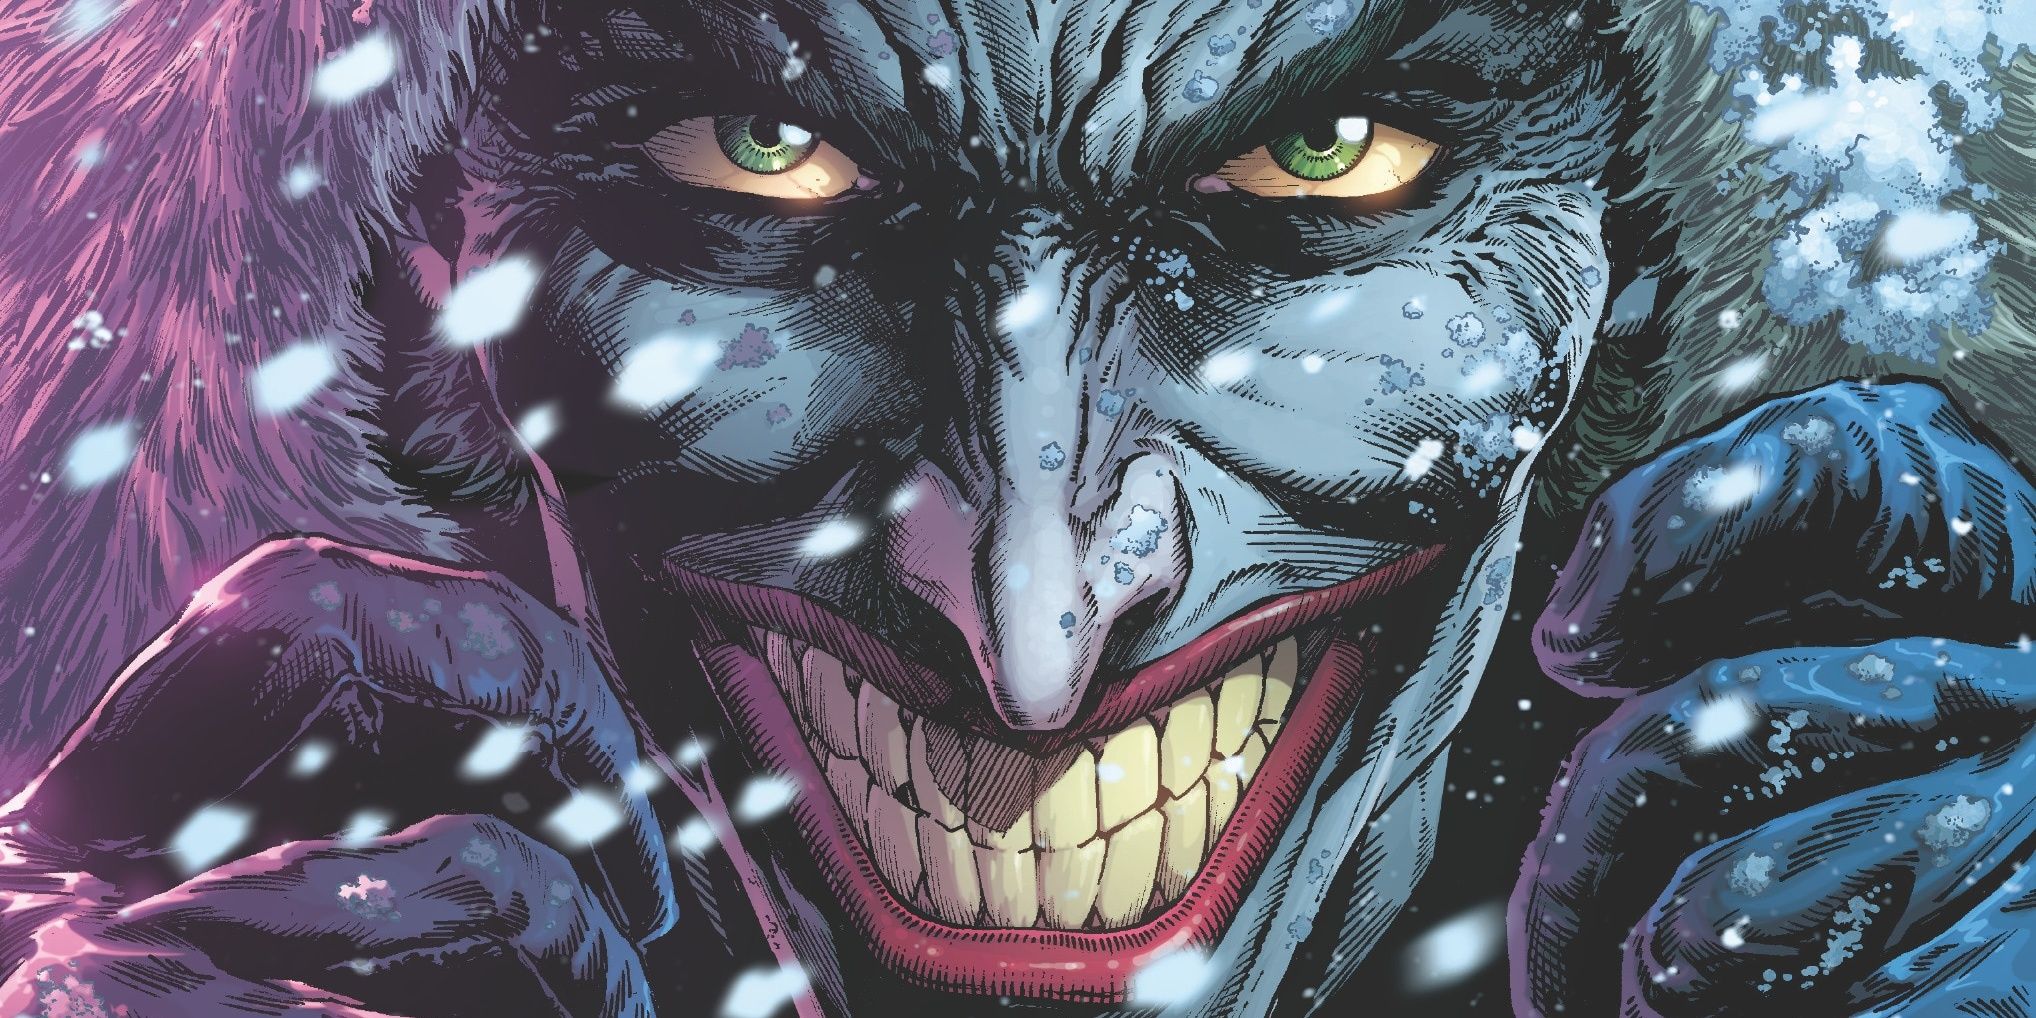 El Joker viaja por el mundo difundiendo el terror en una nueva novela gráfica antológica